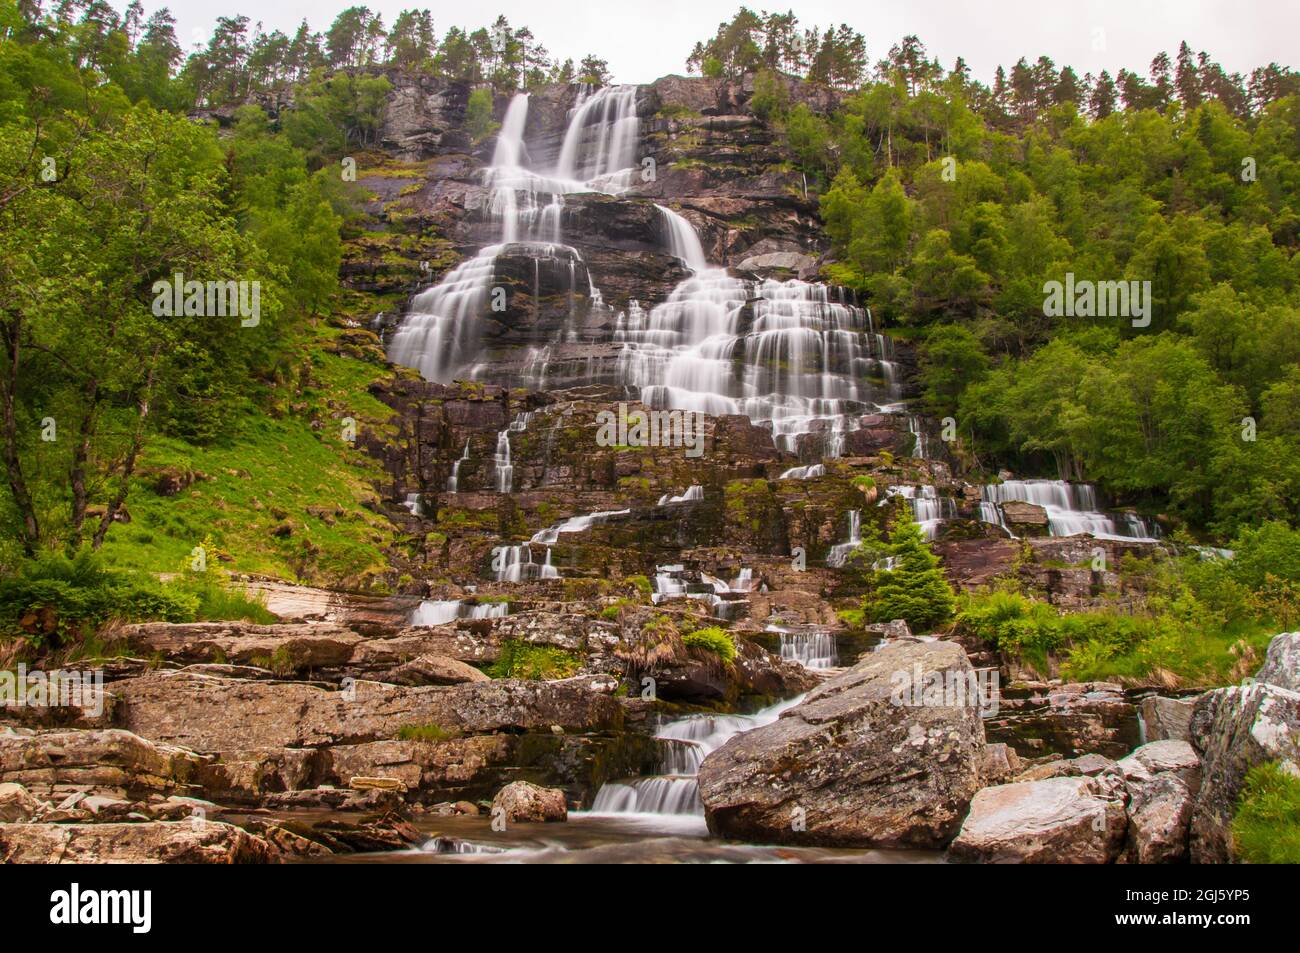 Schöne Aussicht auf Tvinnefossen in Norwegen. Wasserfall Touristenattraktion. Stockfoto